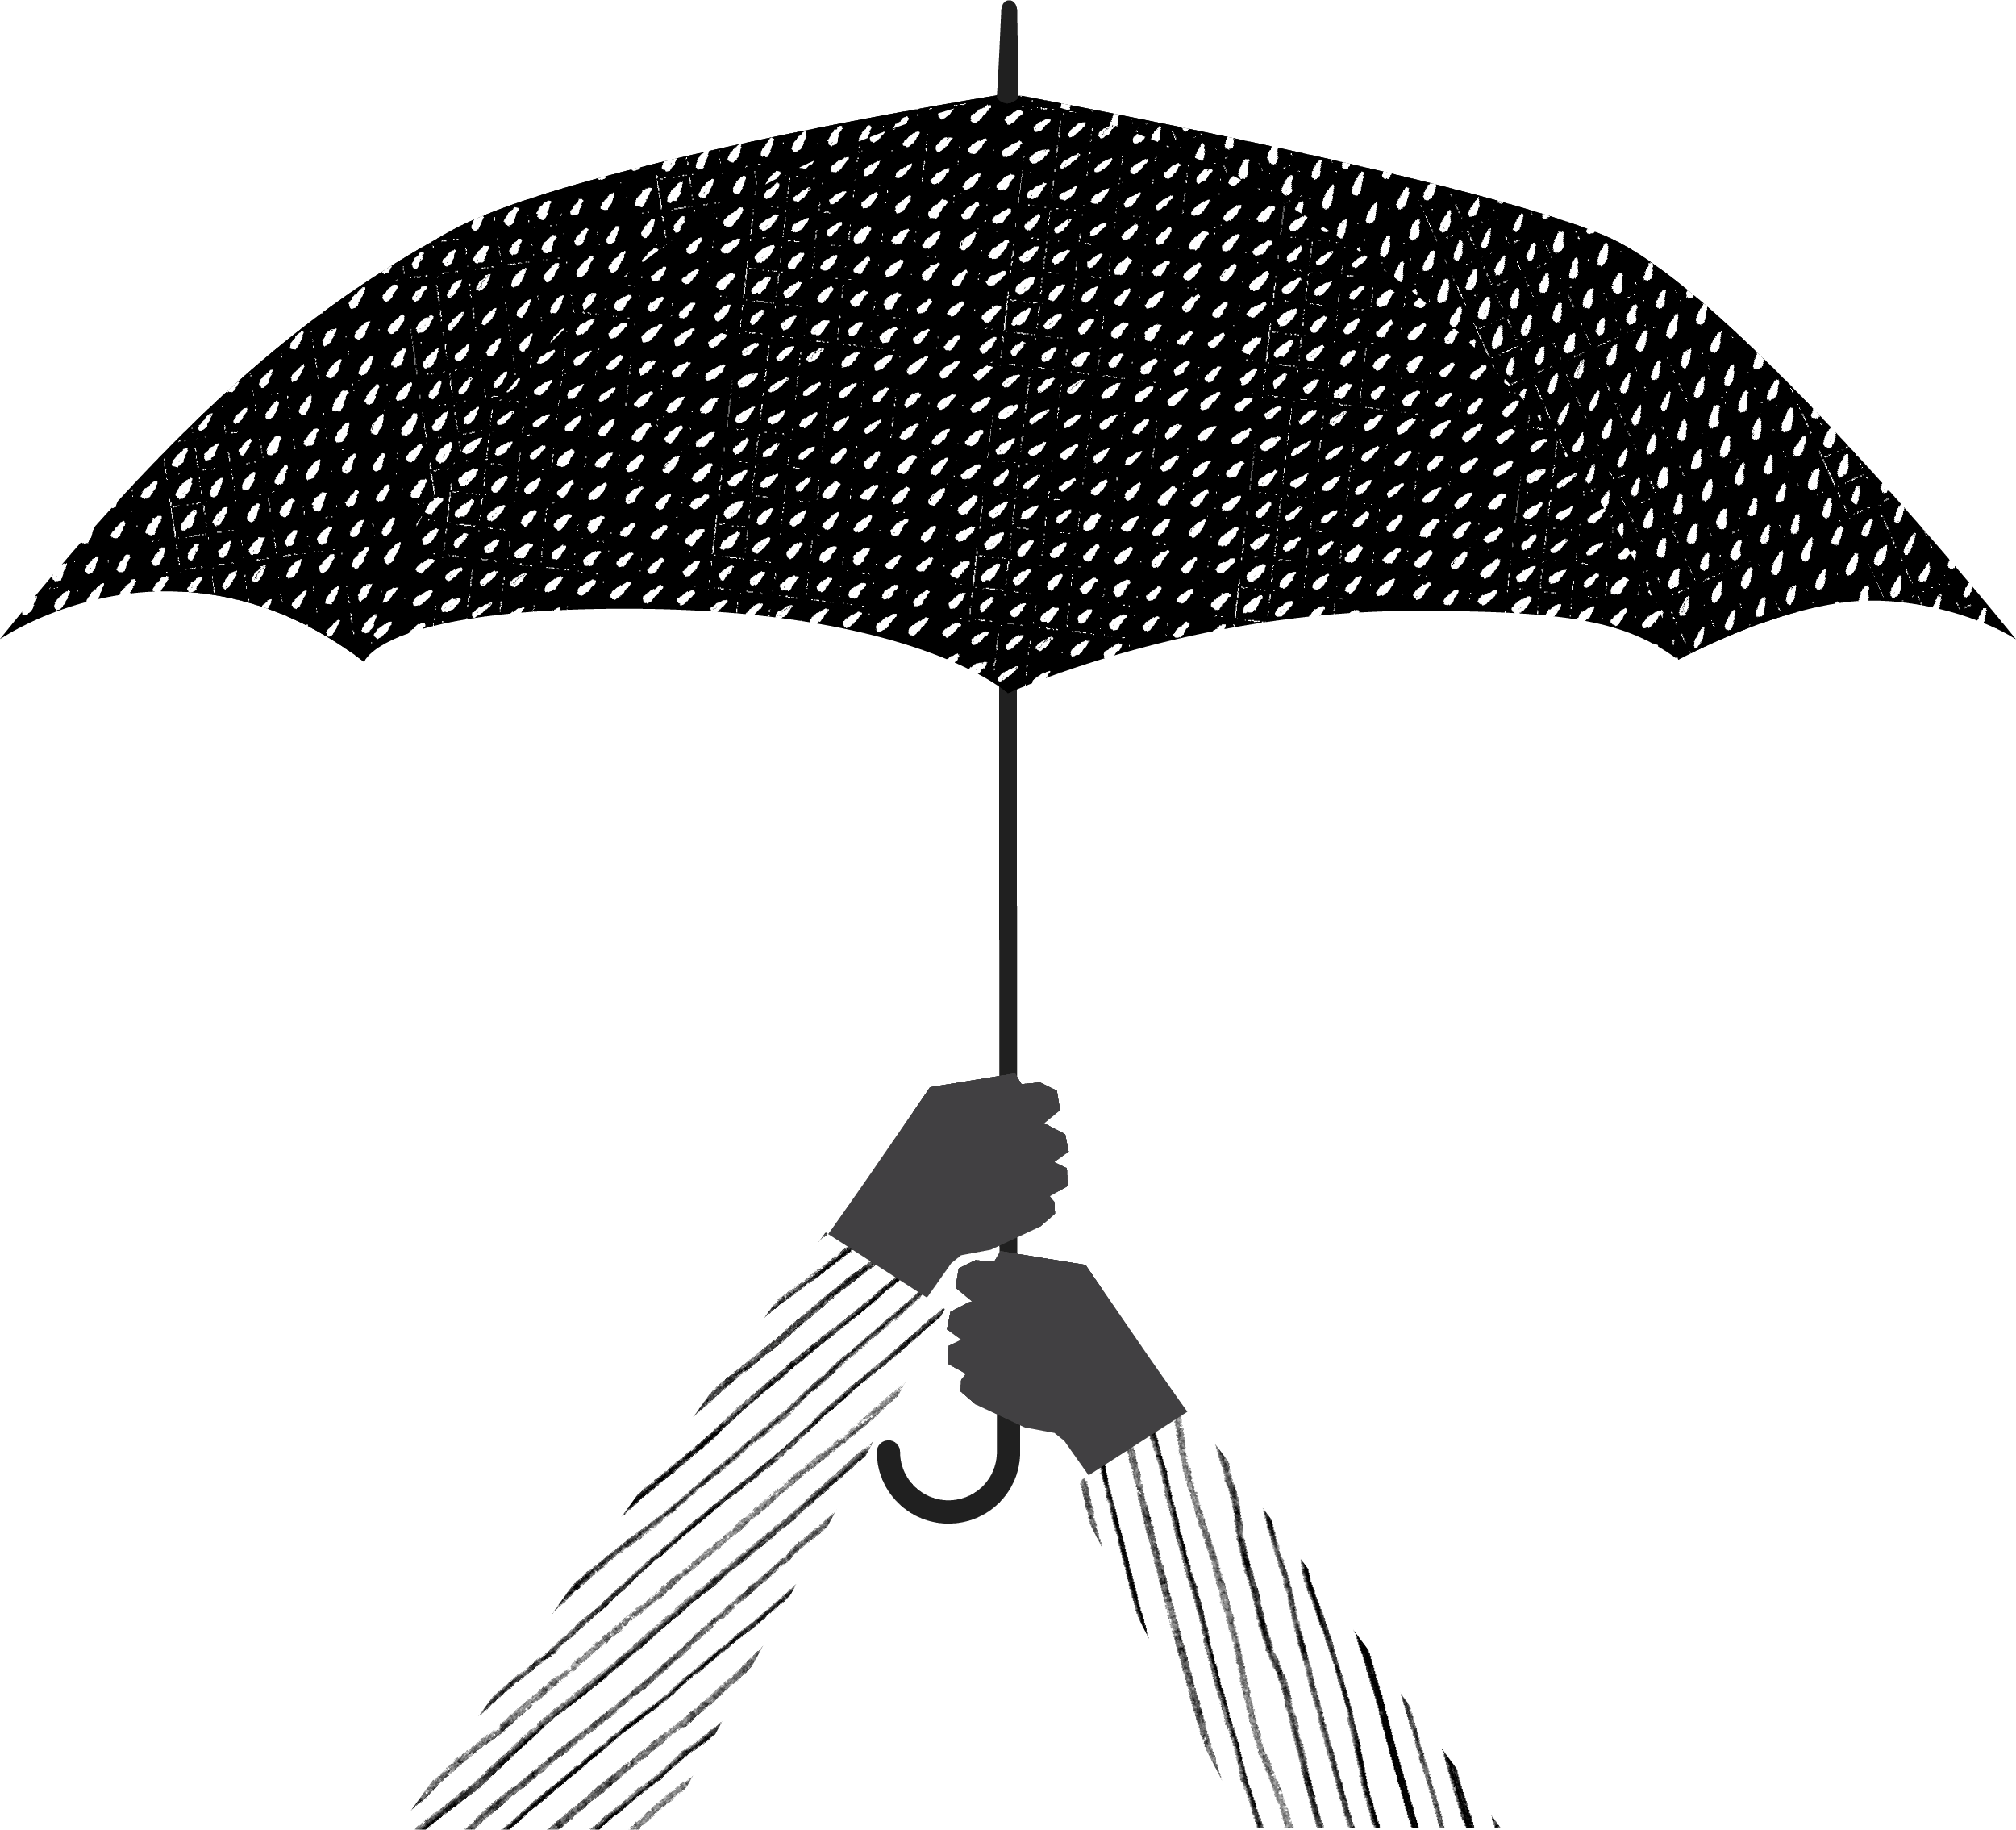 arms holding an umbrella